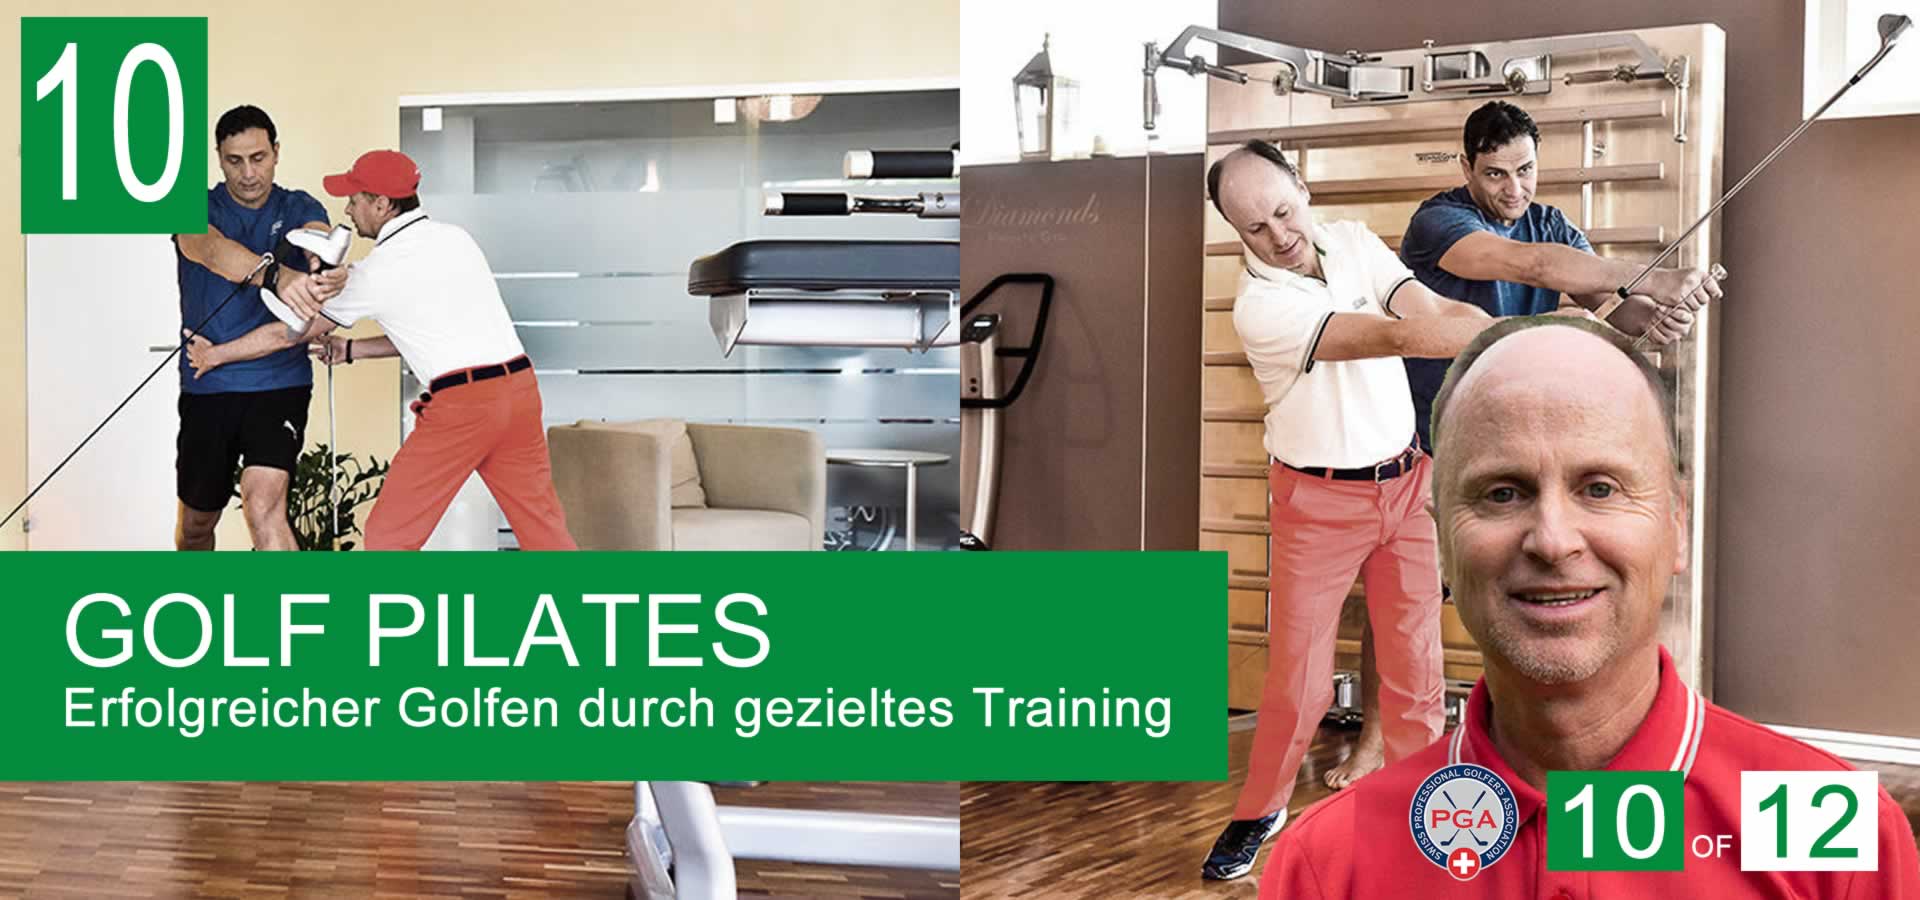 10-Golf-Pilates-Zuerich-Golf-Muskel-training-Gesundheit-Ruecken-Golfschwung-Thierry-Rombaldi-Golfschool